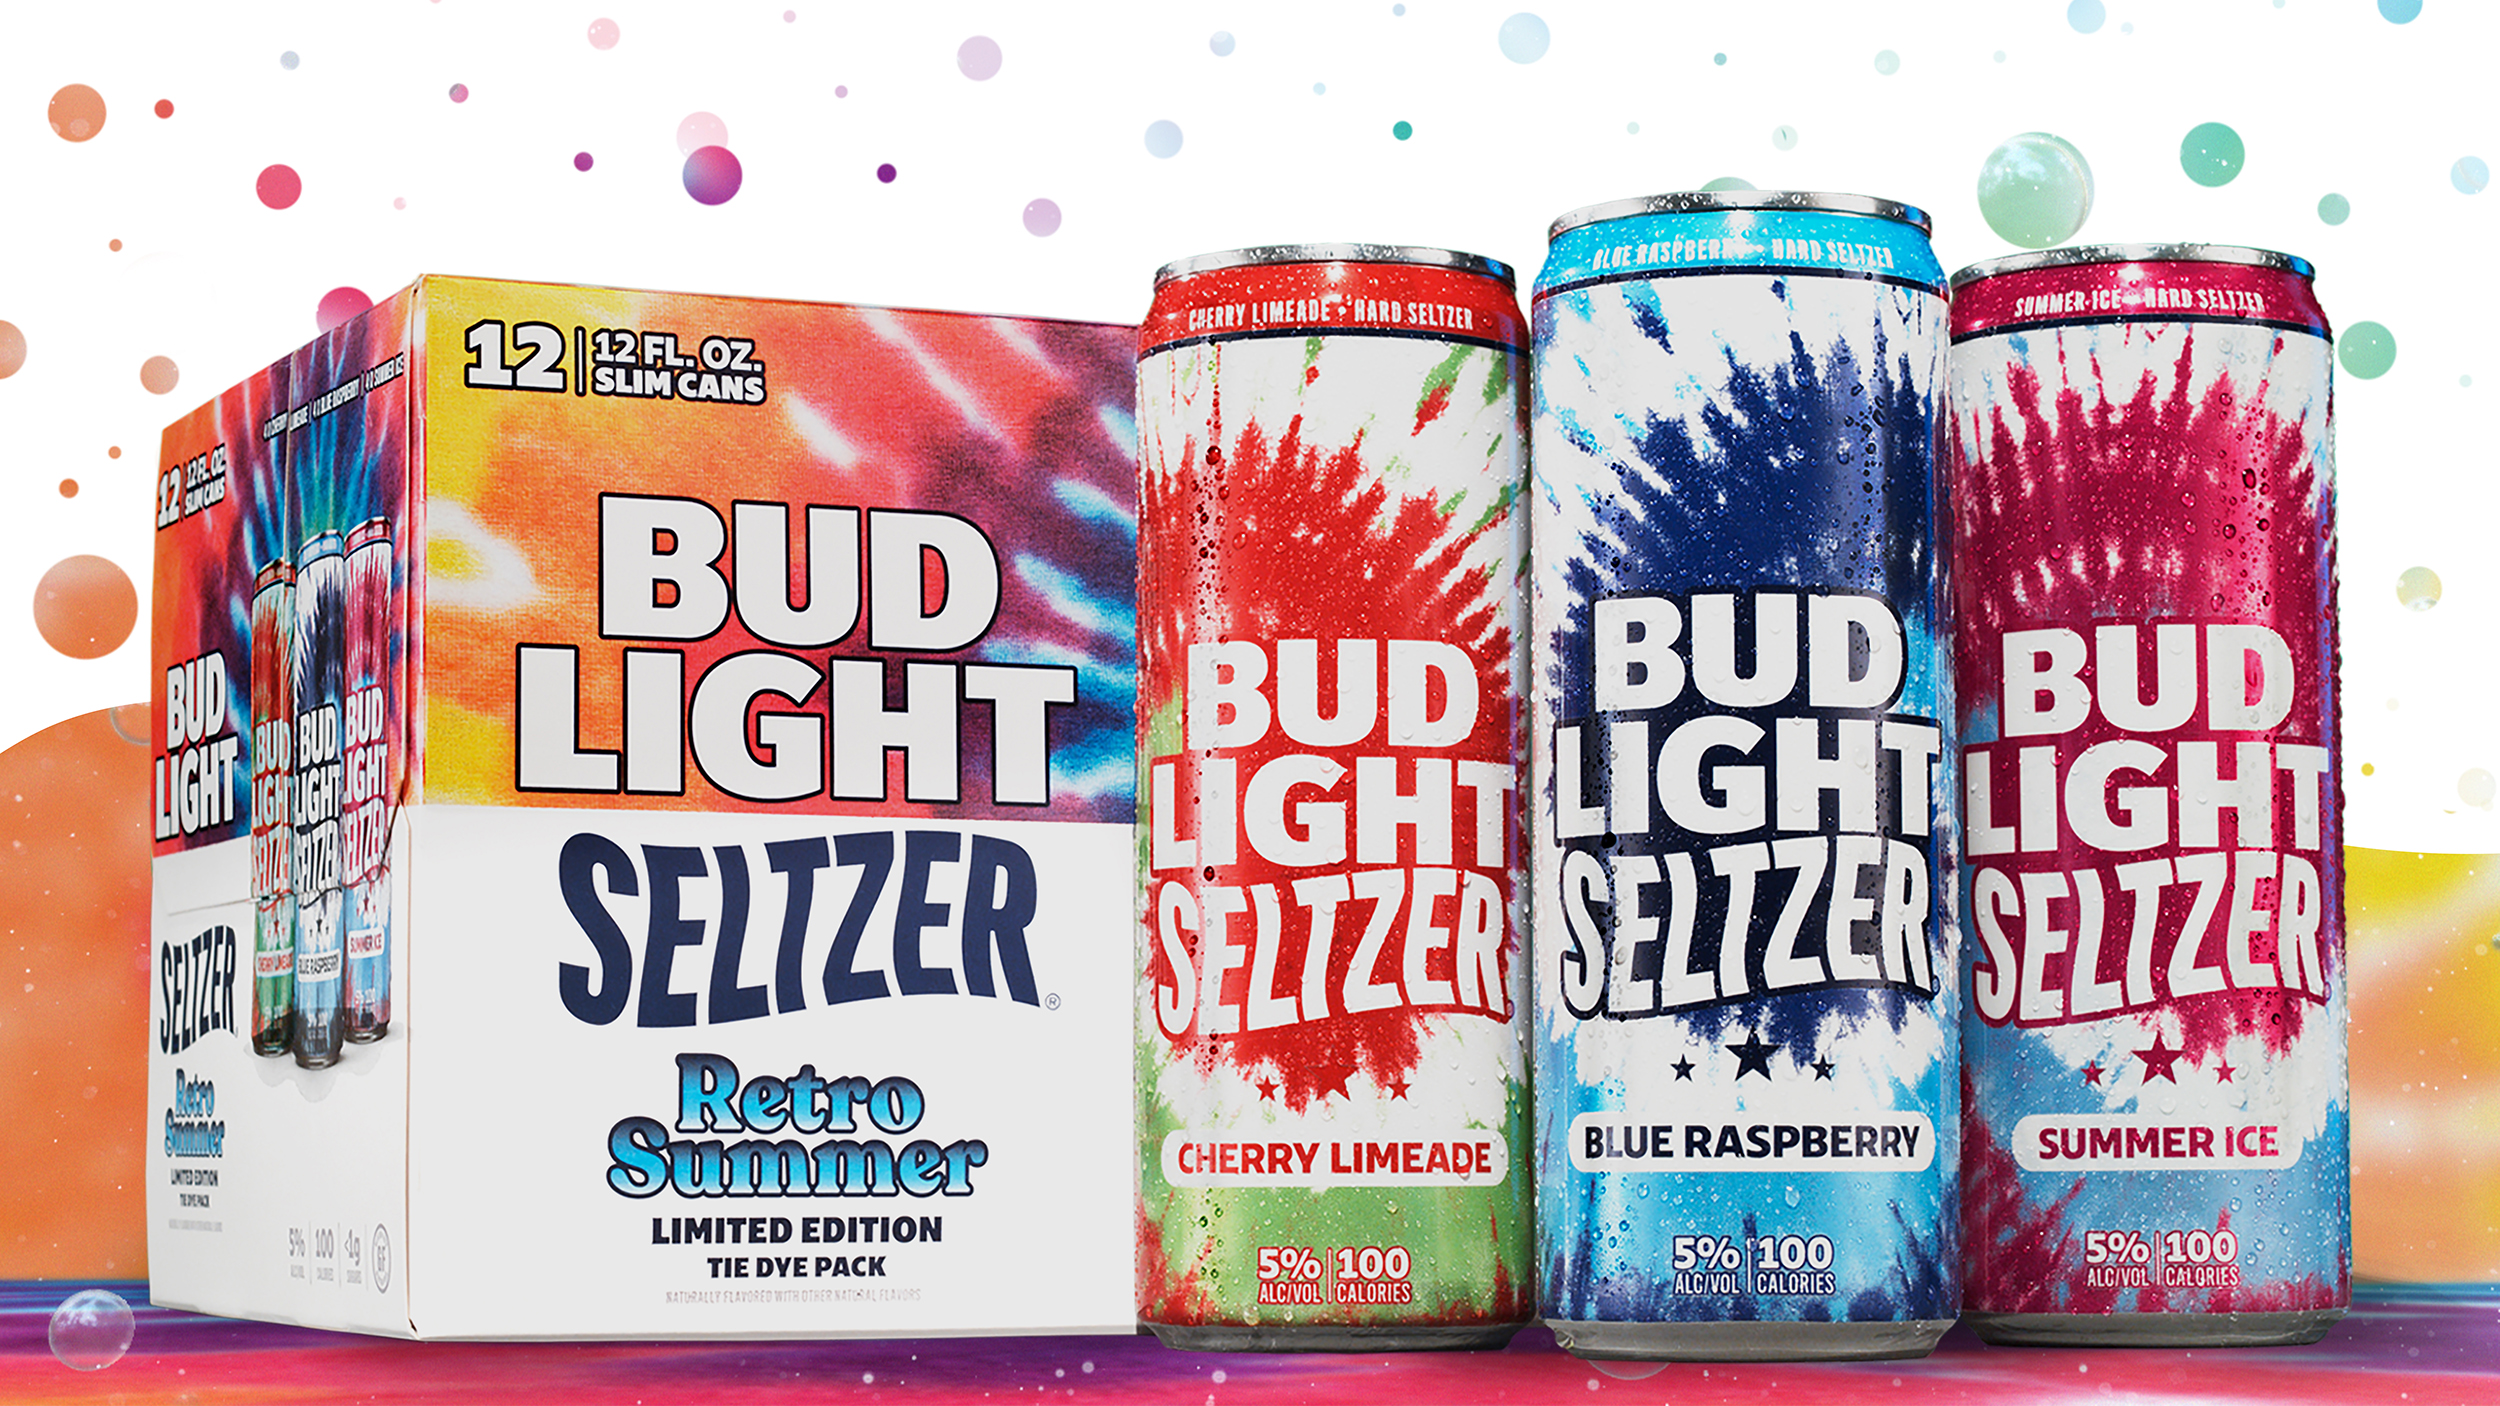 Bud Light Seltzer Retro Summer